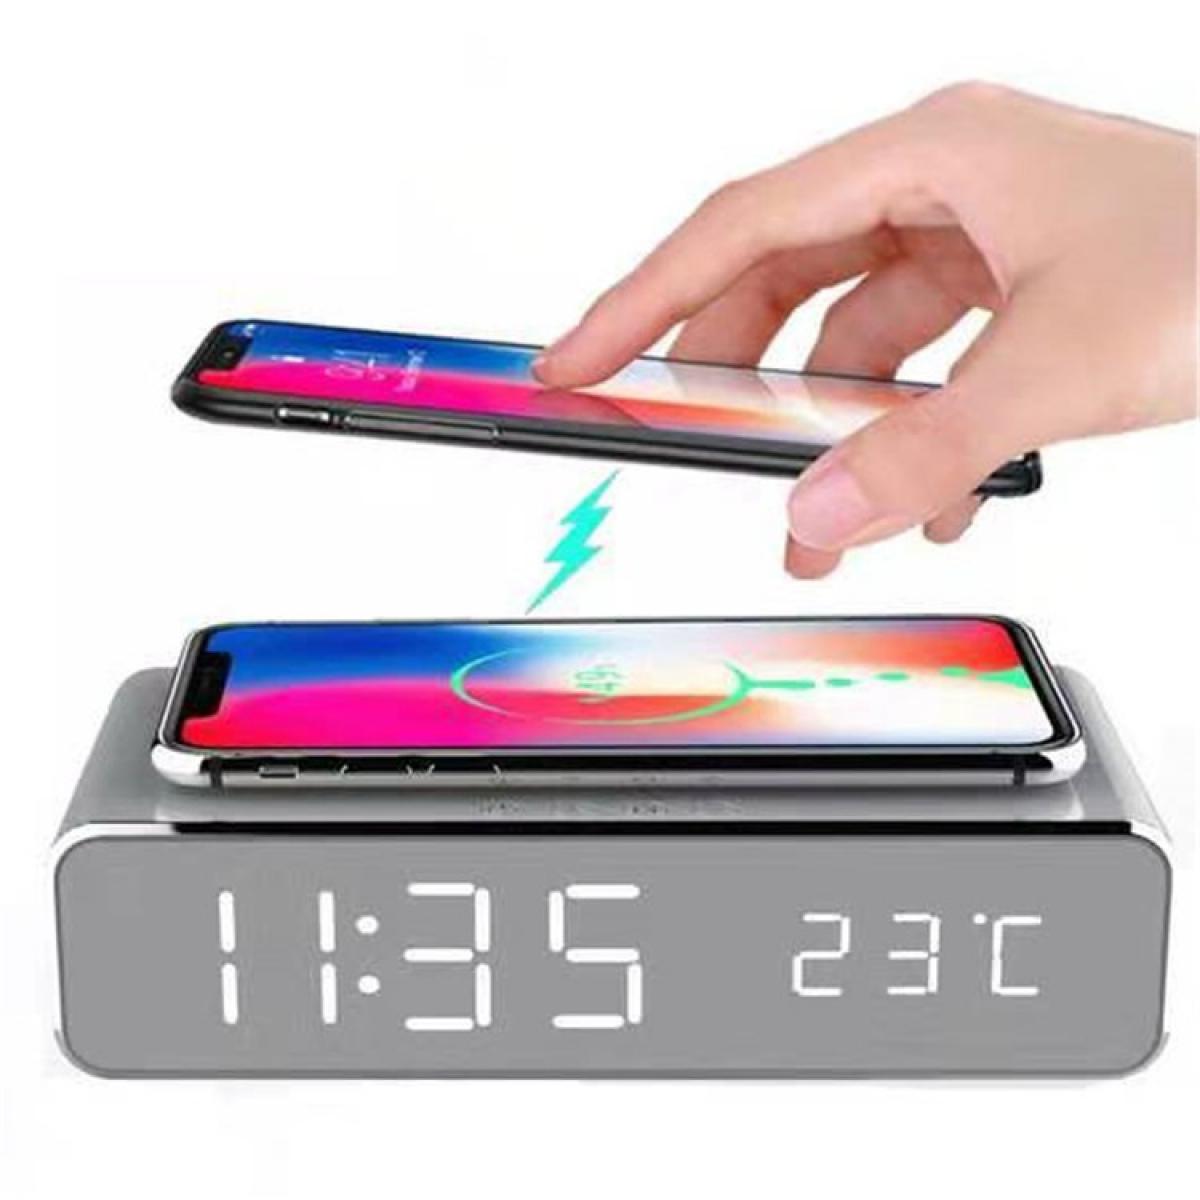 Shot - Radio-Reveil avec Chargeur sans Fil pour SAMSUNG Galaxy NOTE 10 Smartphone Induction QI Bureau (ARGENT) - Chargeur secteur téléphone